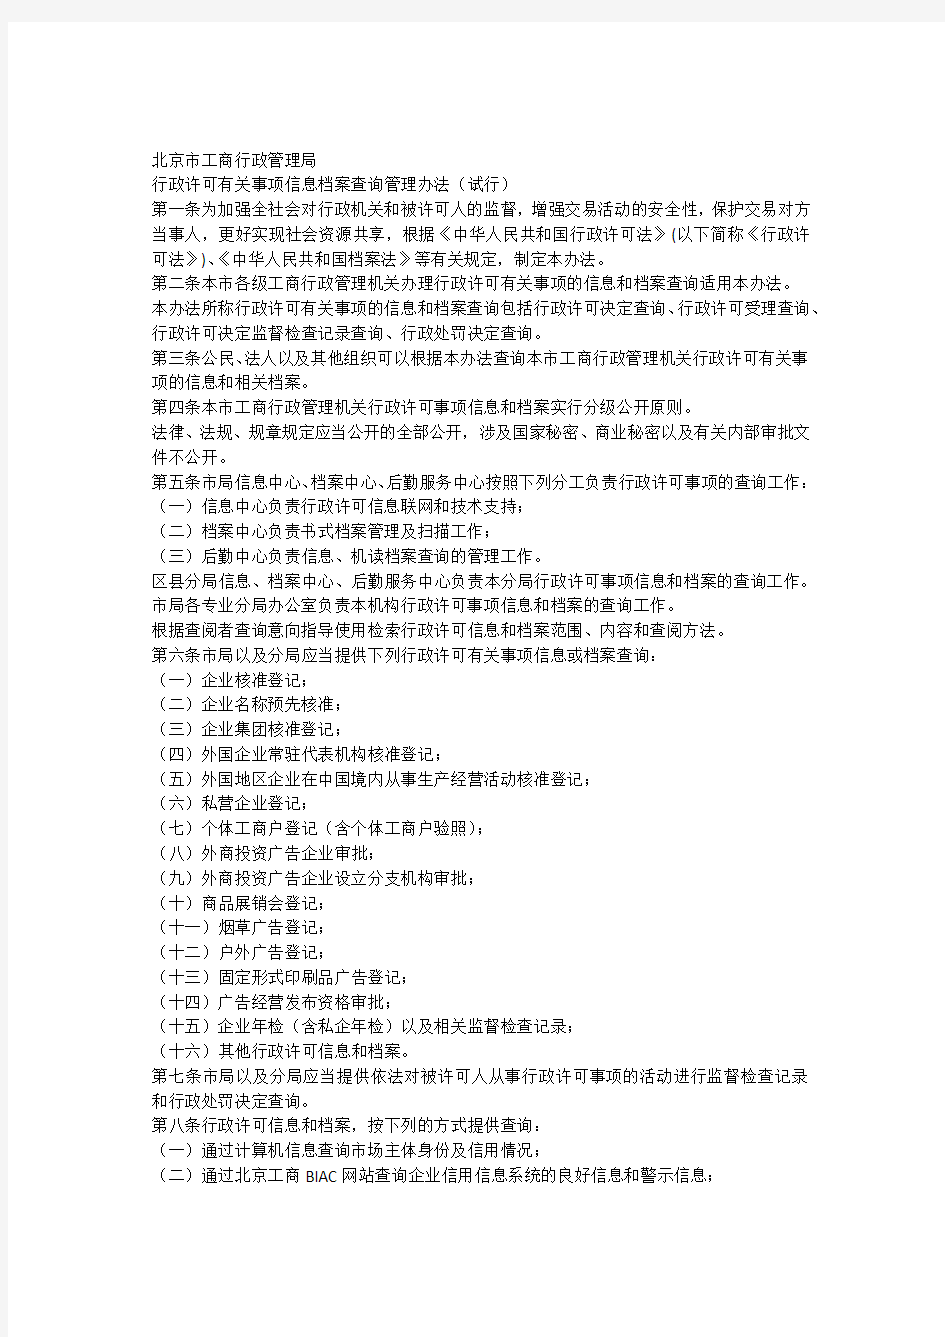 《北京市工商行政管理局行政许可有关事项信息档案查询管理办法》